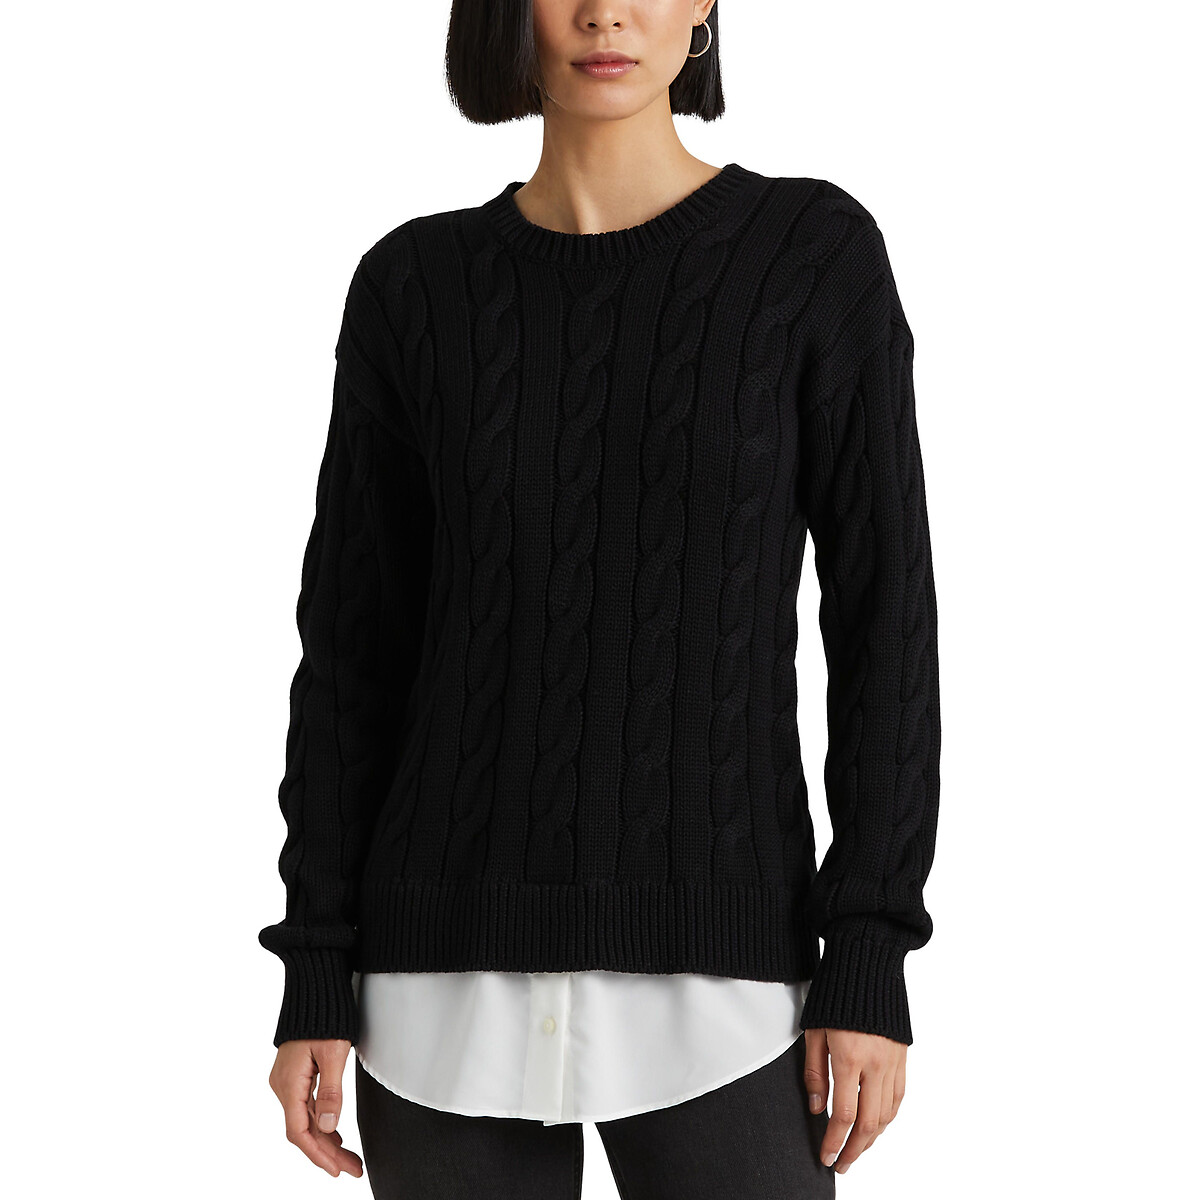 Пуловер с круглым вырезом из плетеного трикотажа S черный